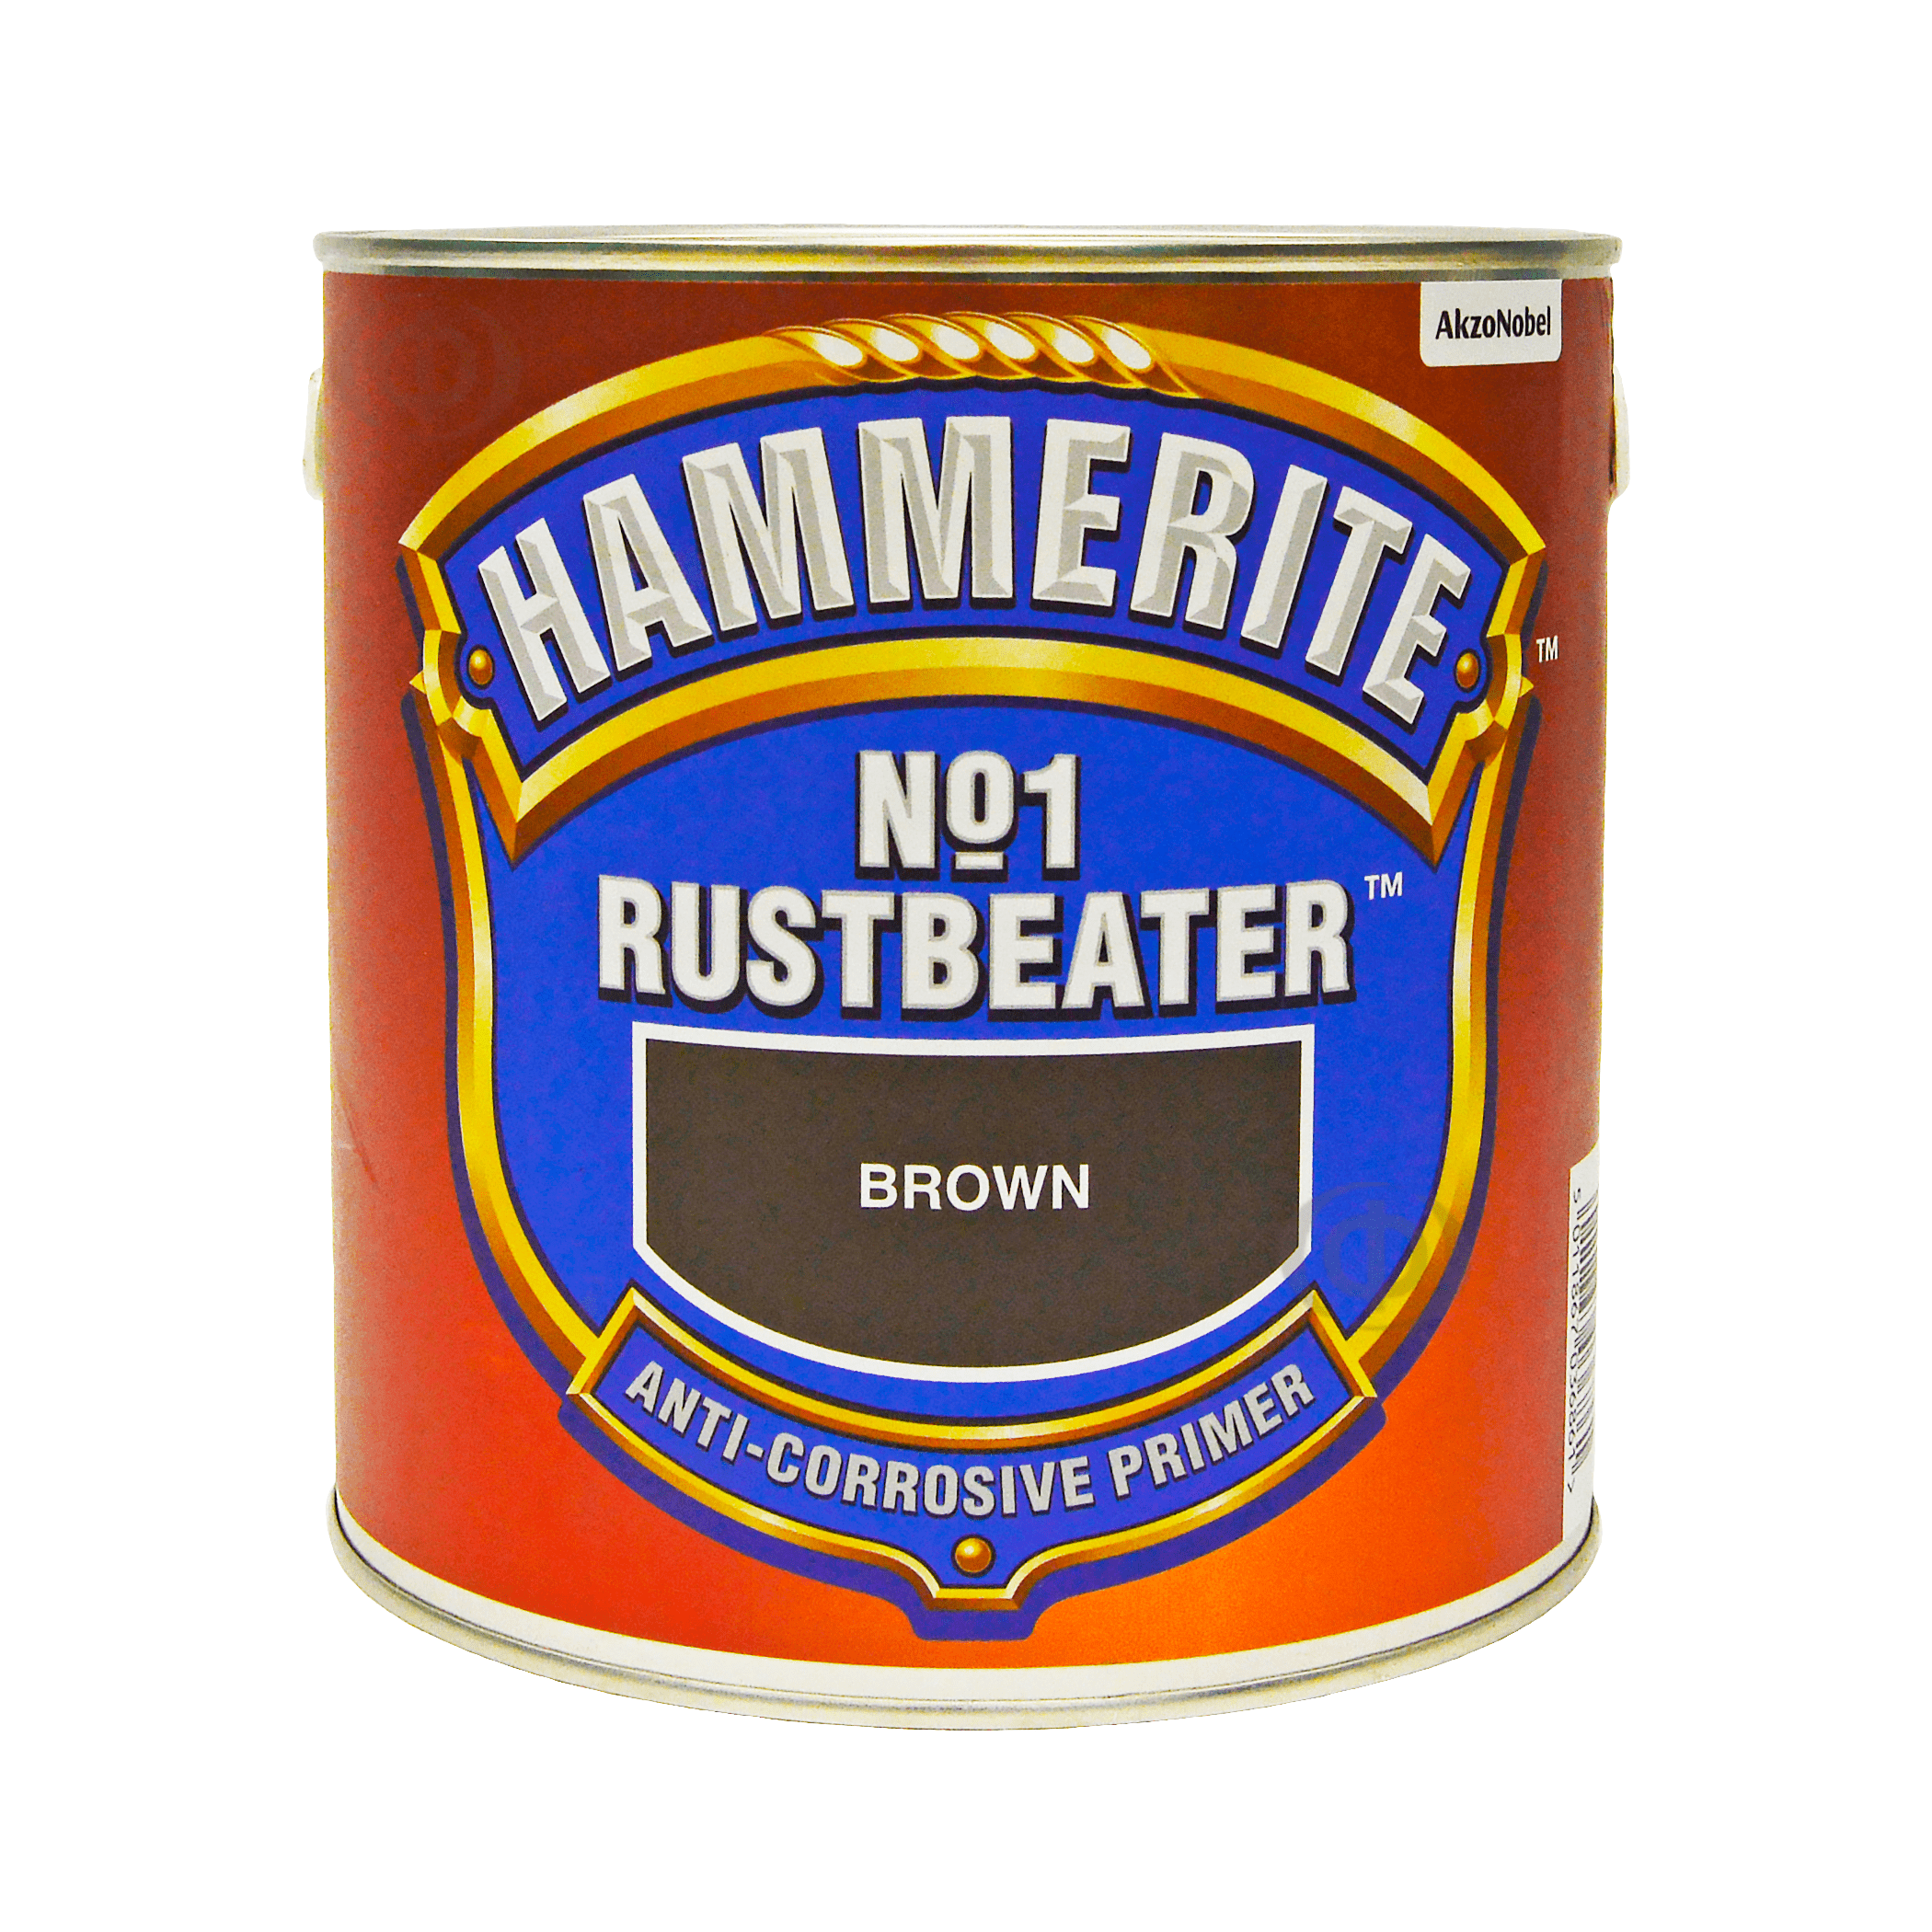 Hammerite rust beater грунт антикоррозийный коричневый для черных металлов фото 1